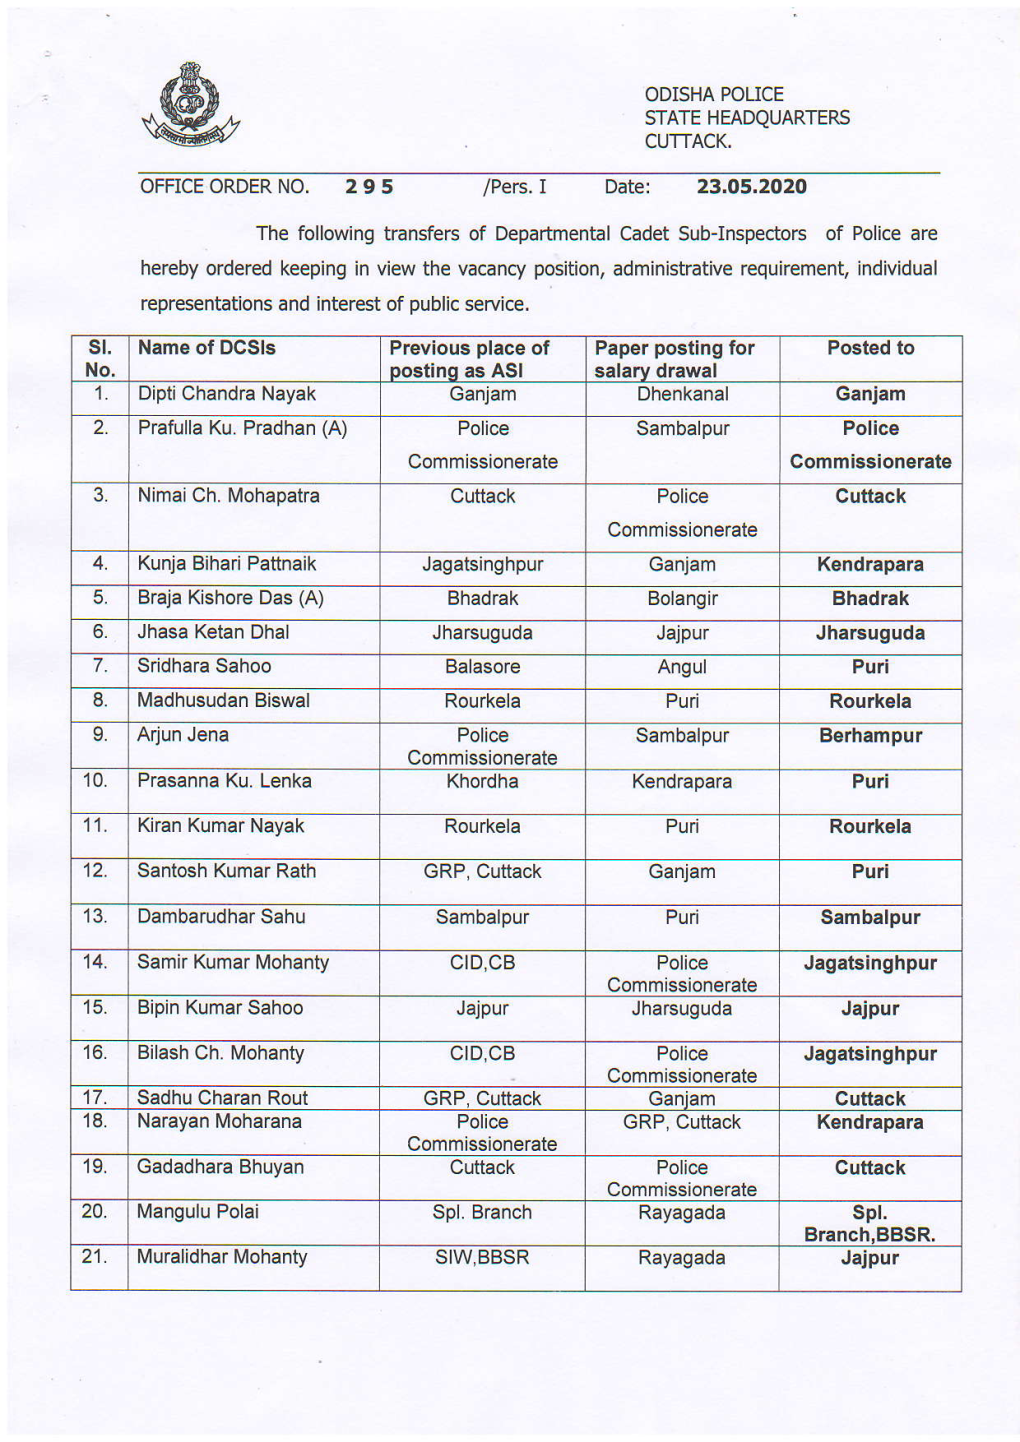 Pers. I Date: 23.05.2020 Oostinq As ASI Paper Posting for Salarv Drawal Commissionerate Cuttack Jharsuguda Borhampur Sambalpur